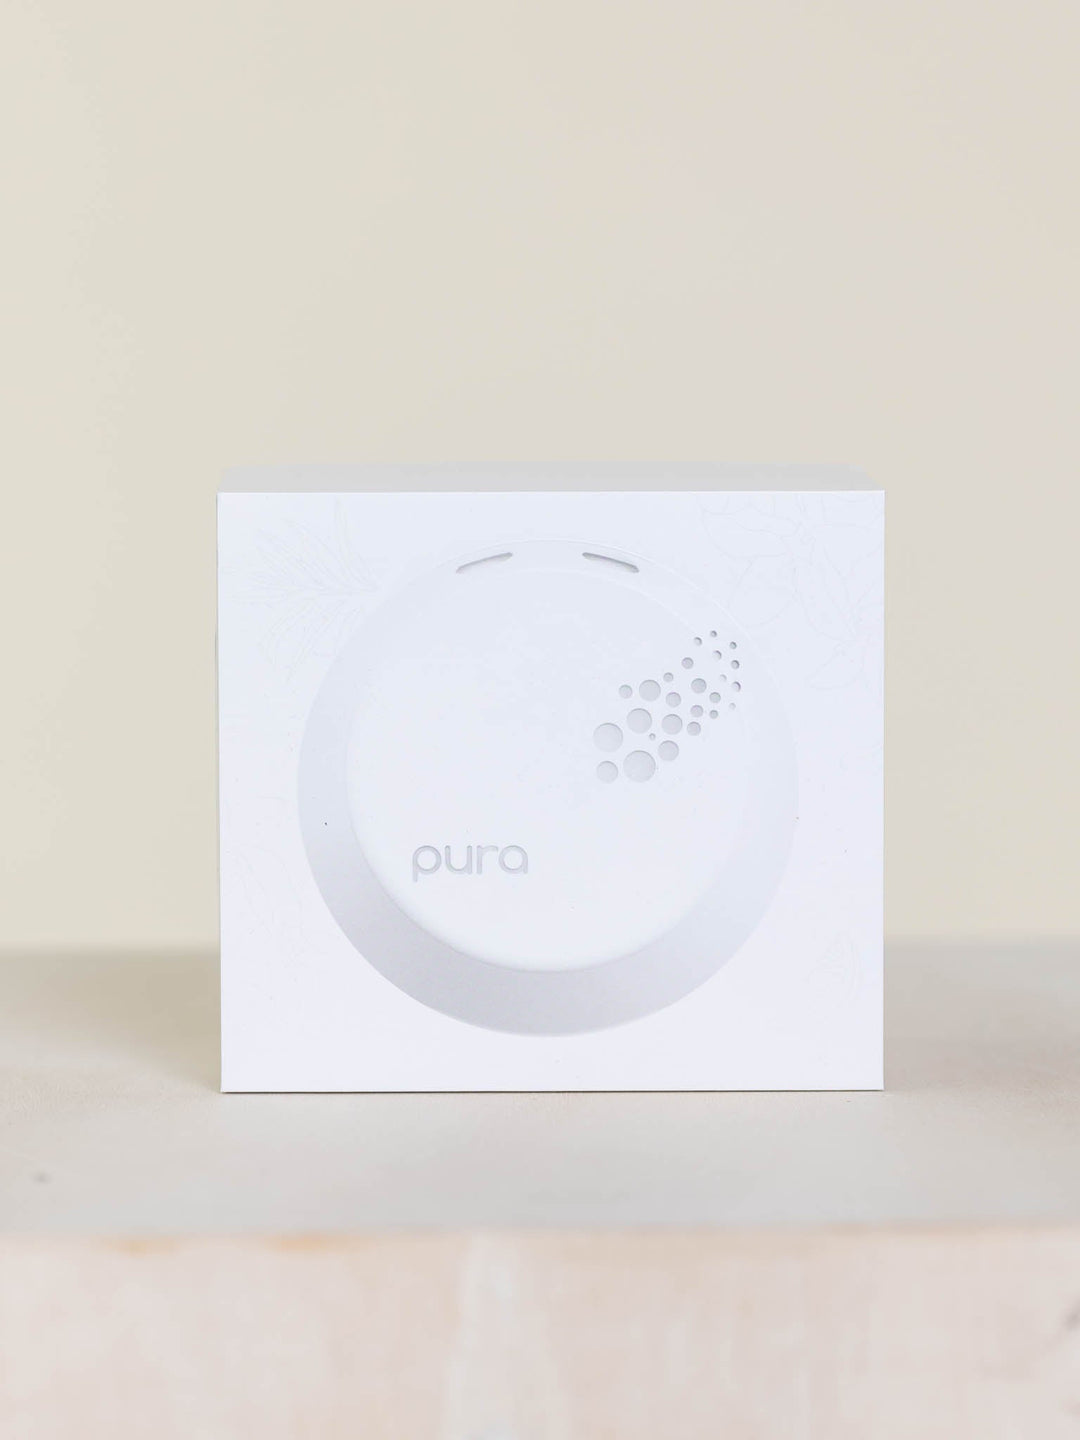 Pura-Pura Diffuser Device - Leela and Lavender